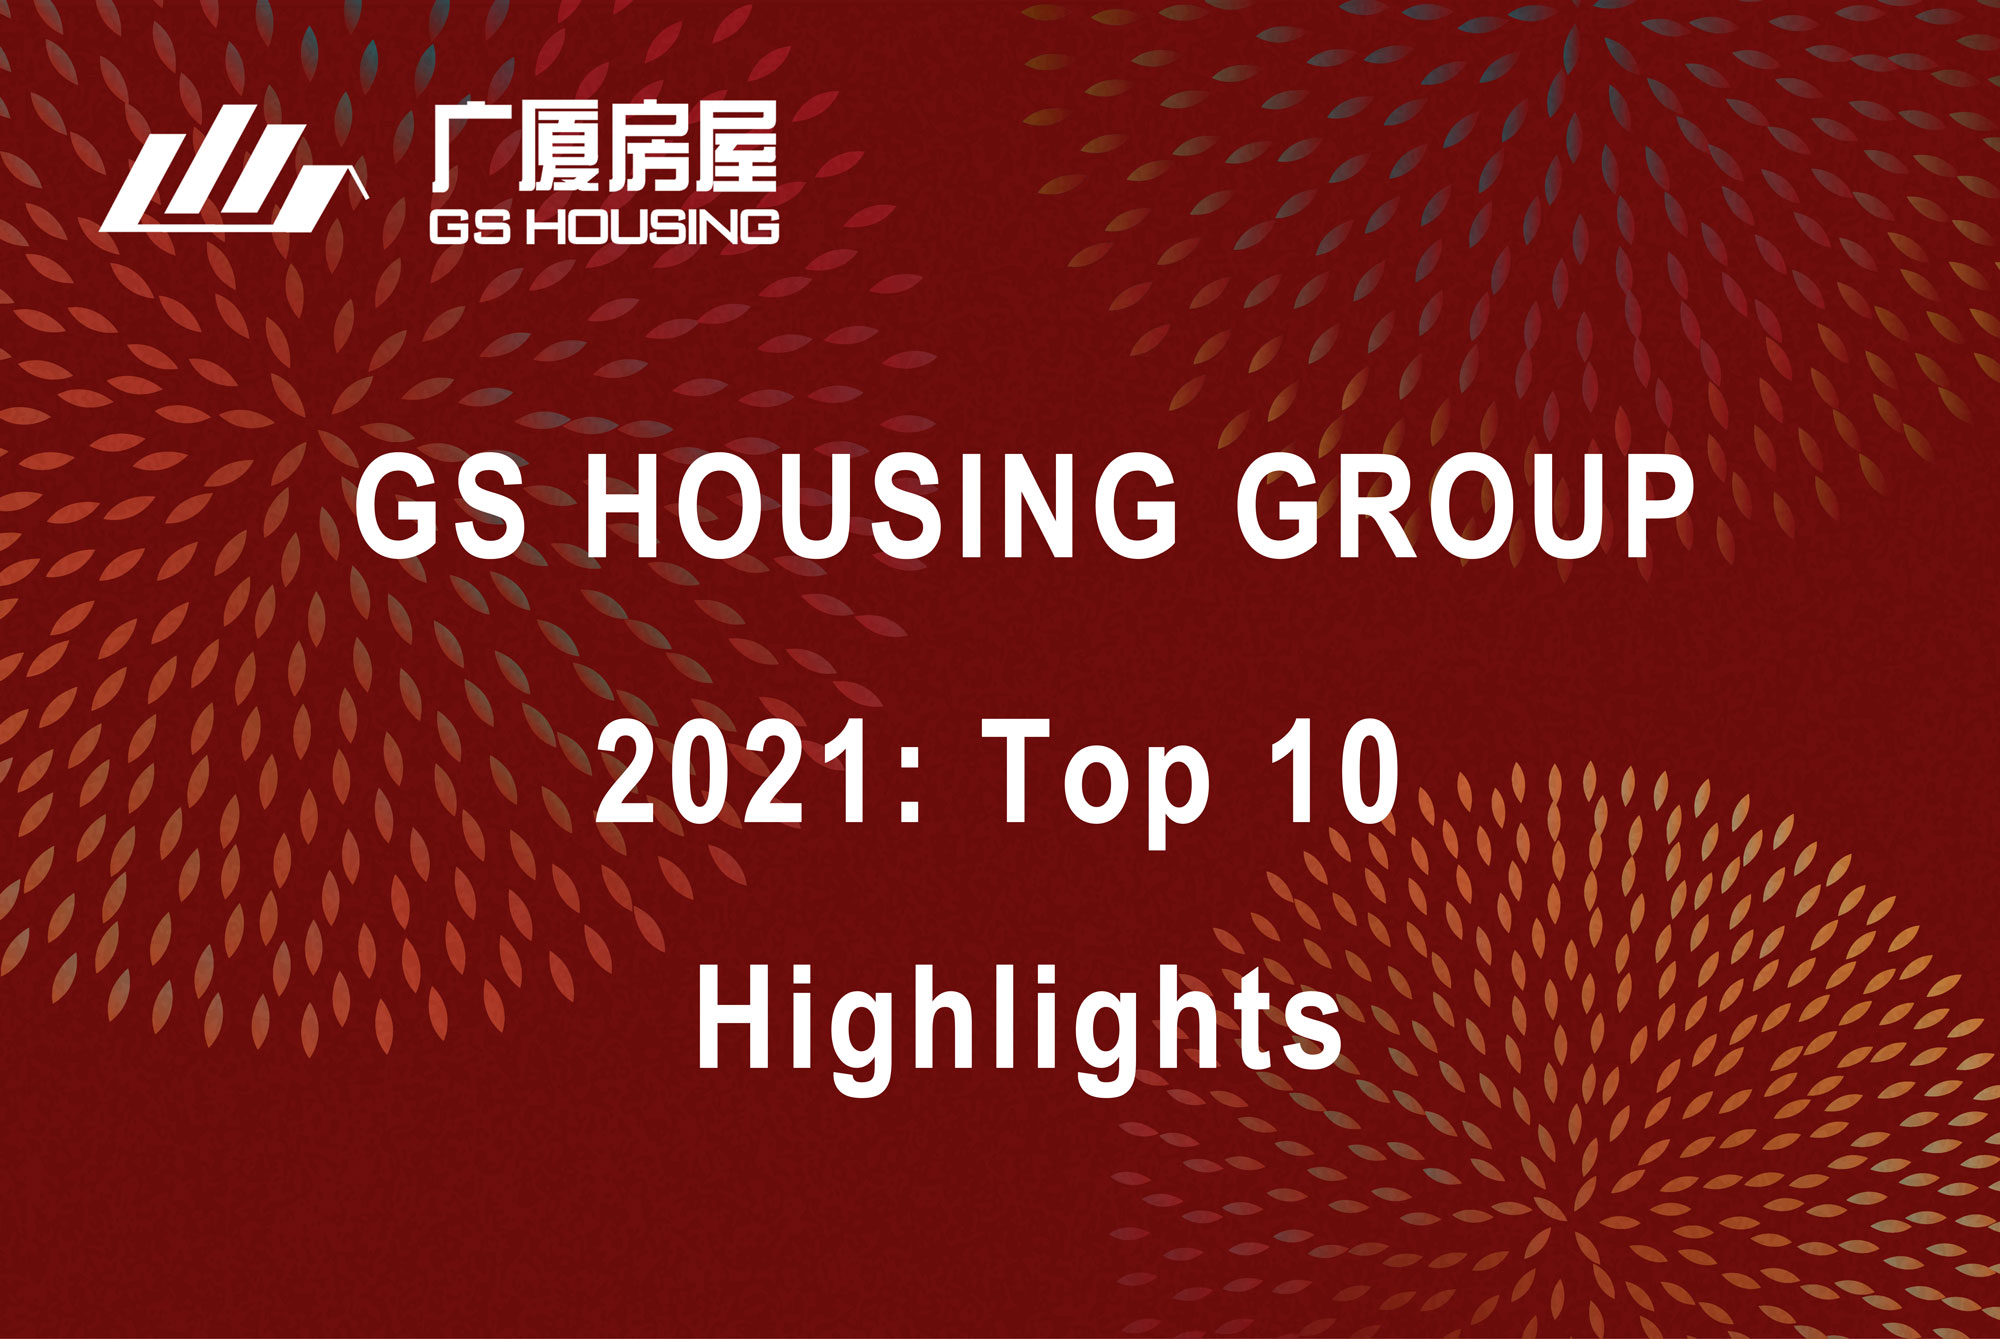 Tekintse vissza 2021 10 legfontosabb eseményét a GS Housing Group-ban